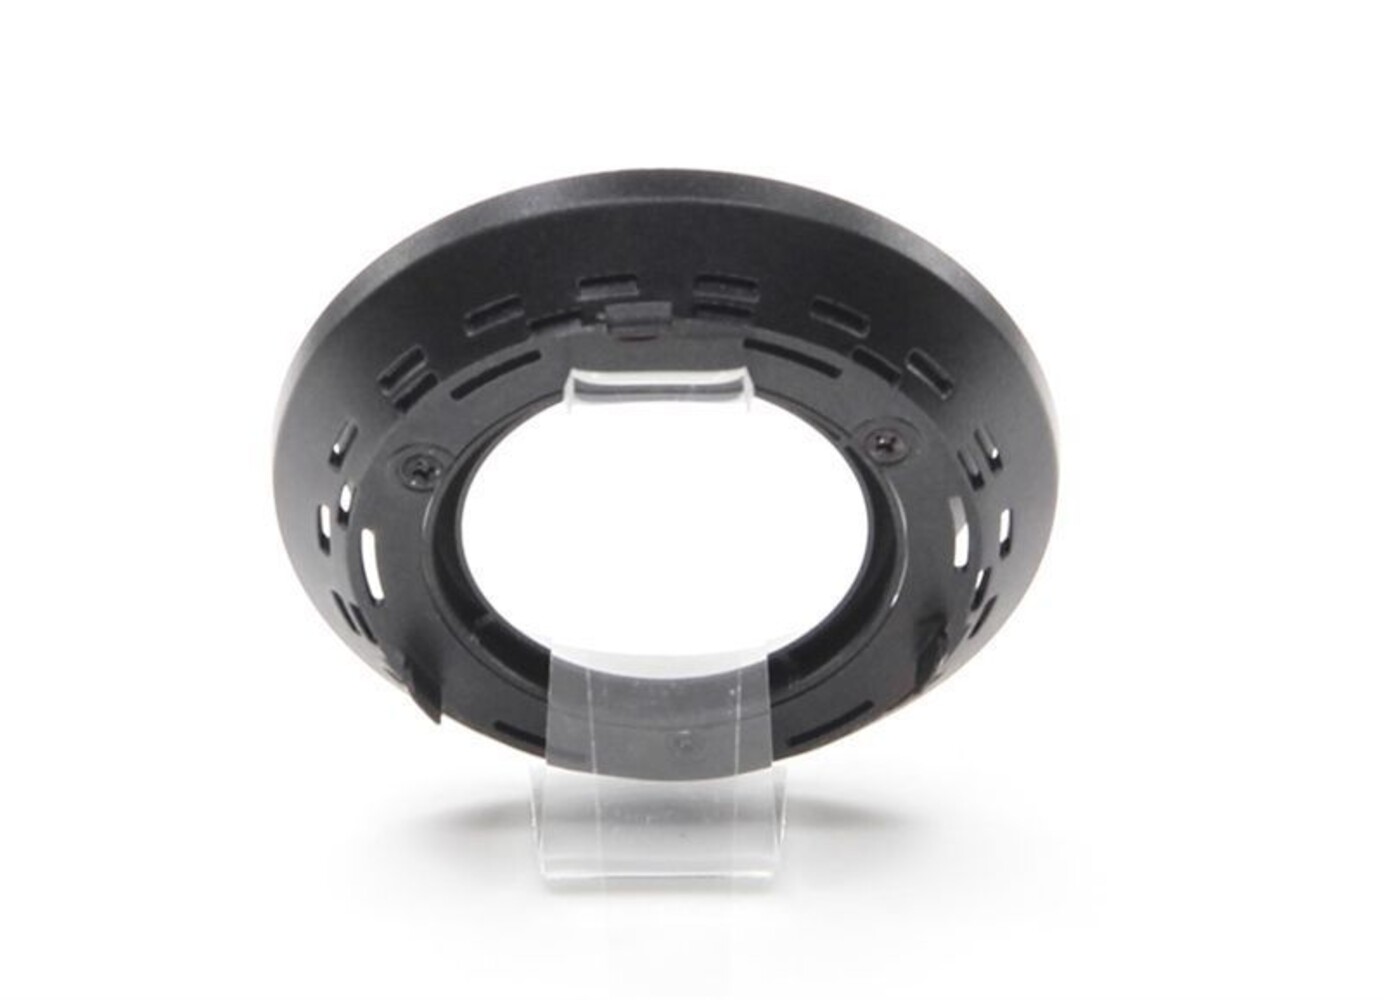 hochwertiges Zubehör von Deko-Light, Schwarz und minimalistisch mit eleganter Höhe von 25 mm